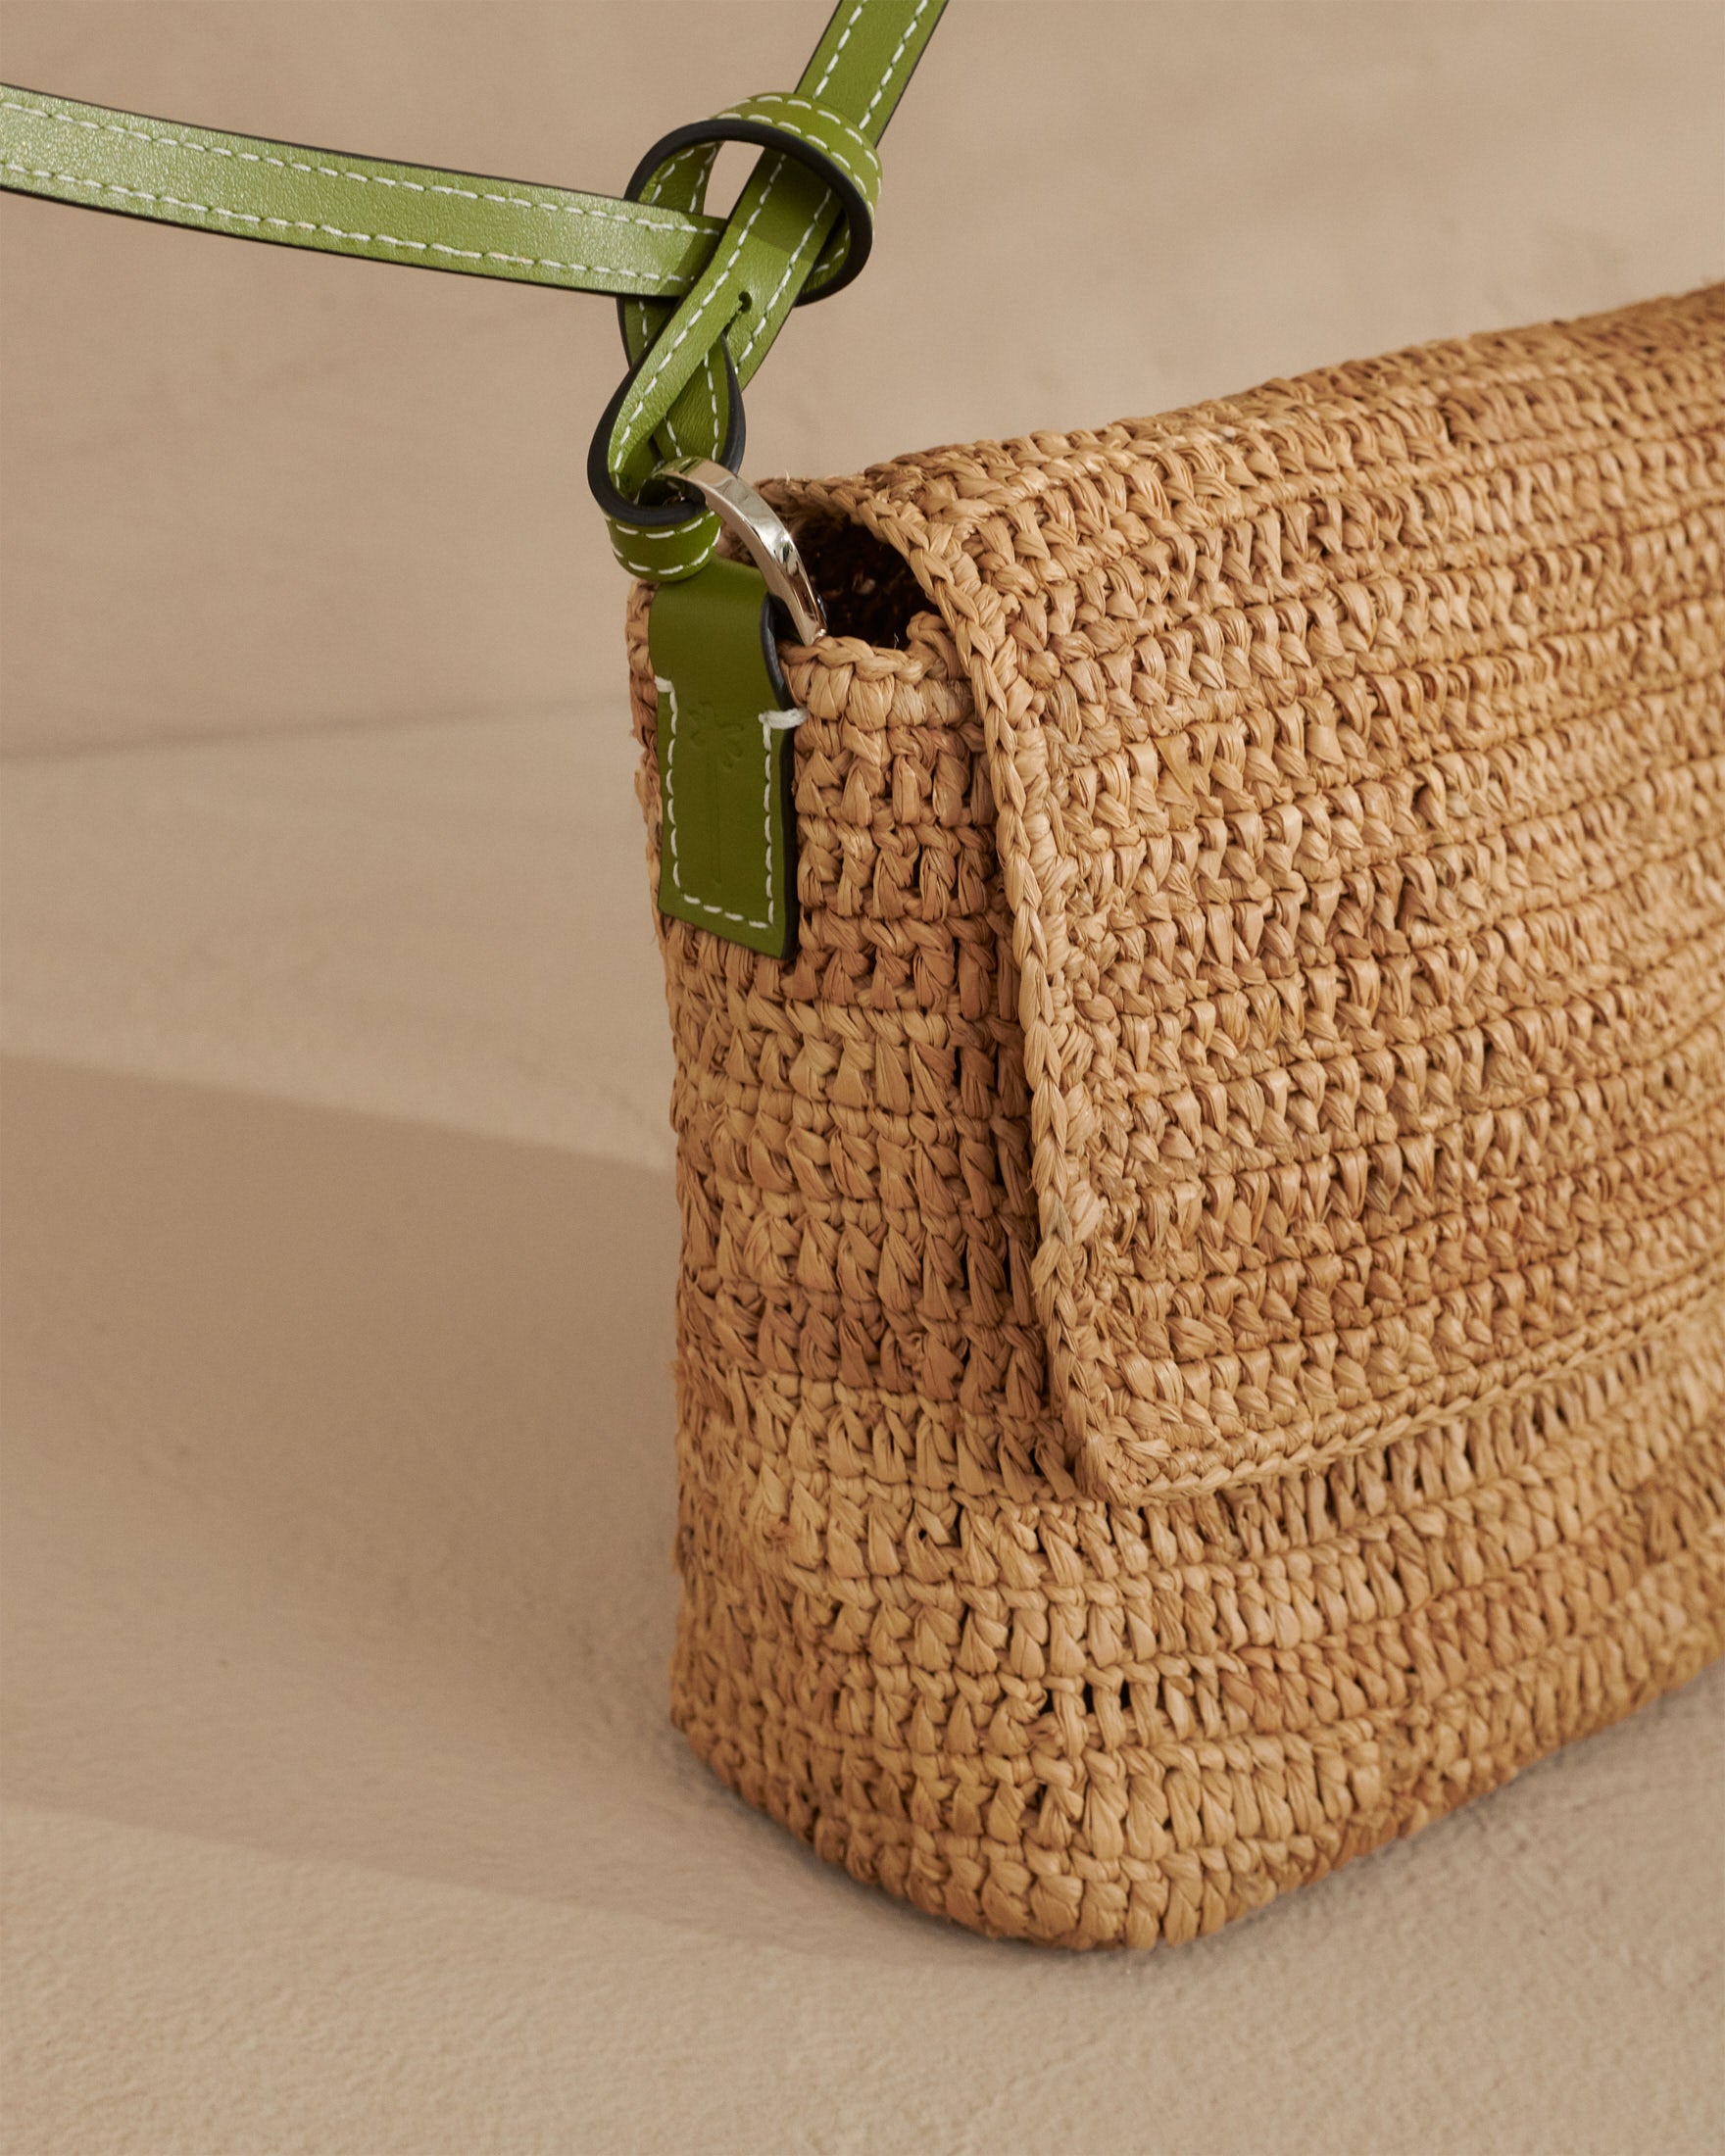 Raffia Summer Night Bag Medium - Palm Leather Tag - Tan & Green